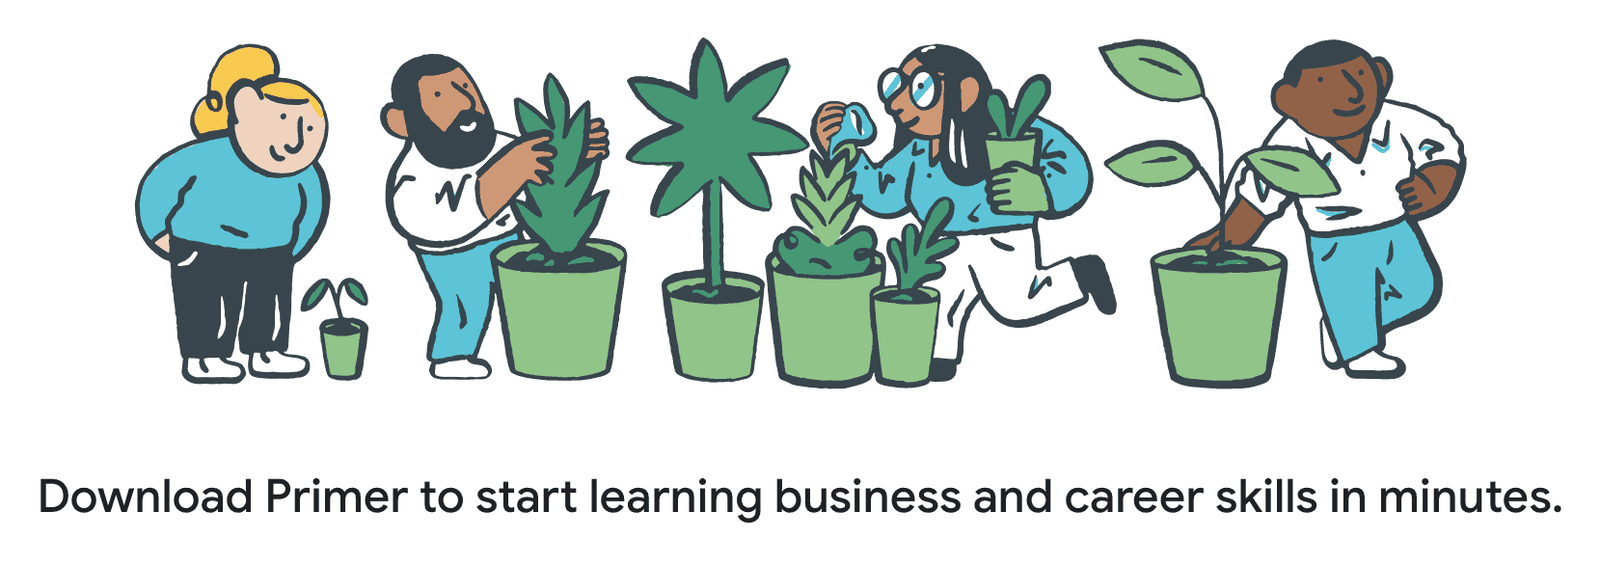 Téléchargez Google Primer pour commencer à apprendre des compétences business et carrière en un rien de temps.